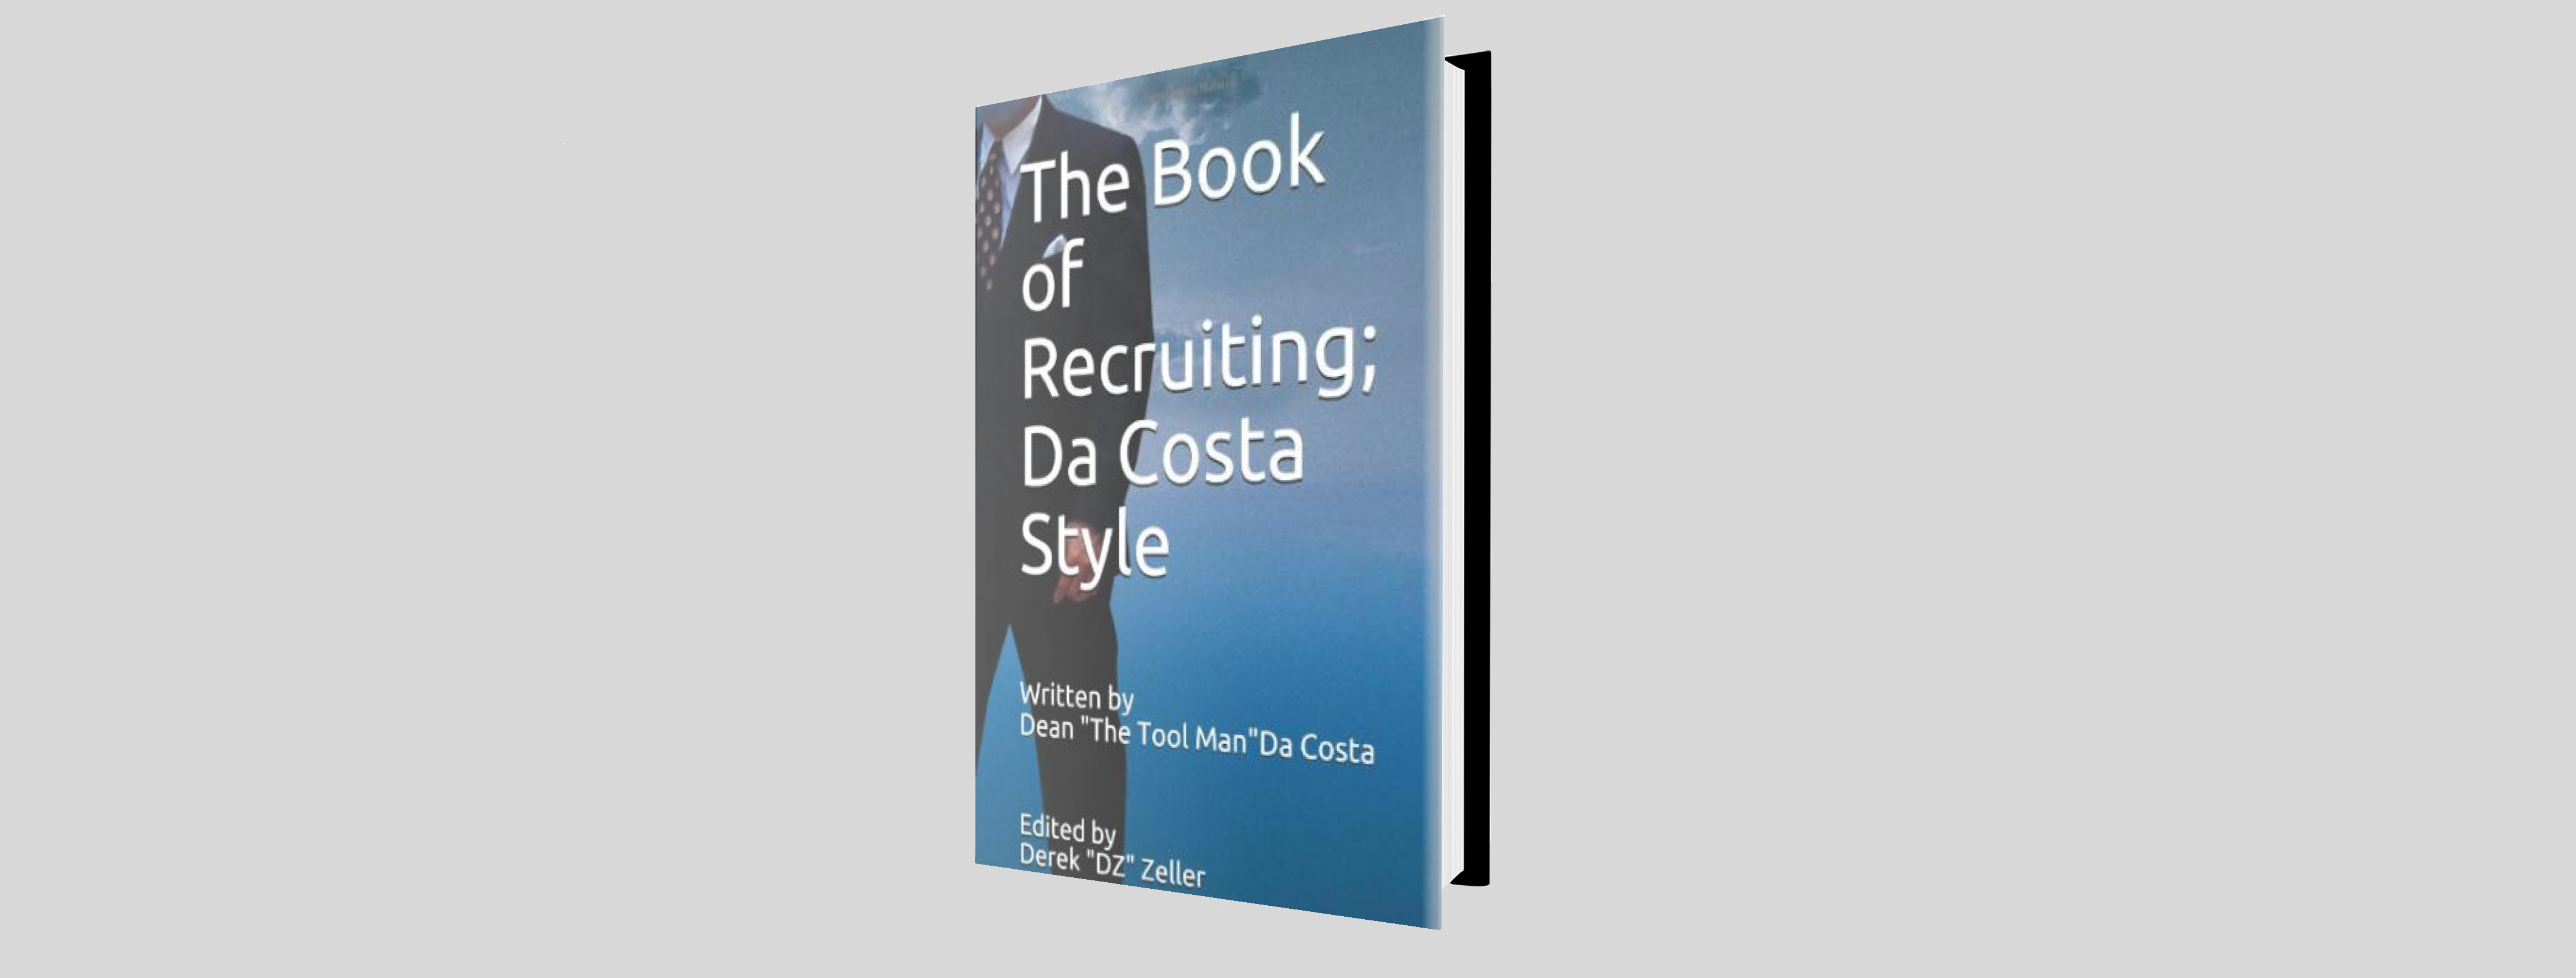 Dean Da Costa book